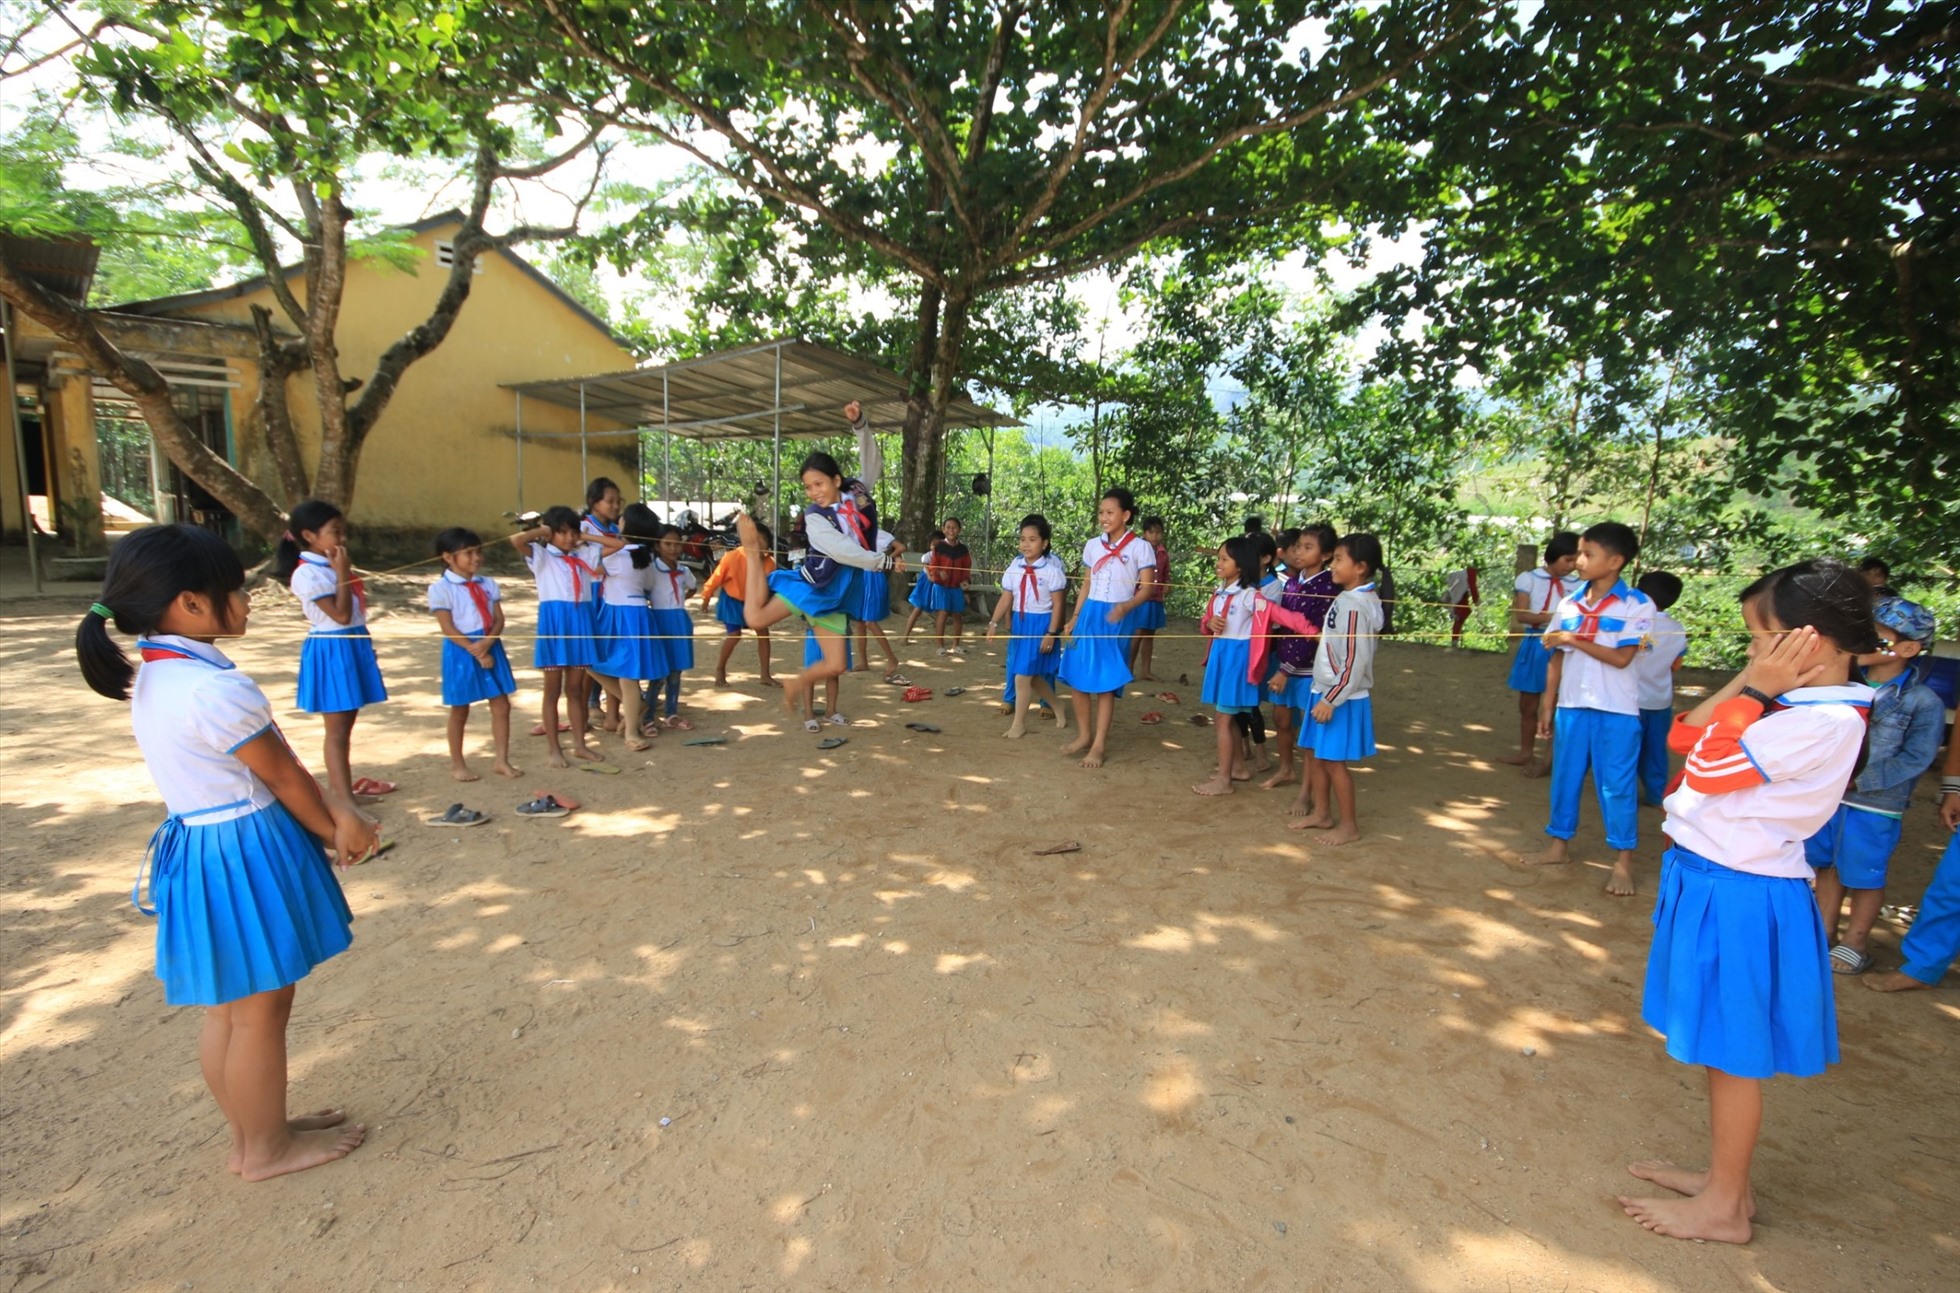 Thể trạng, sức khỏe trẻ em miền núi Quảng Nam cải thiện đáng kể từ khi chương trình sữa học đường triển khai năm 2020. ảnh Hoàng Bin